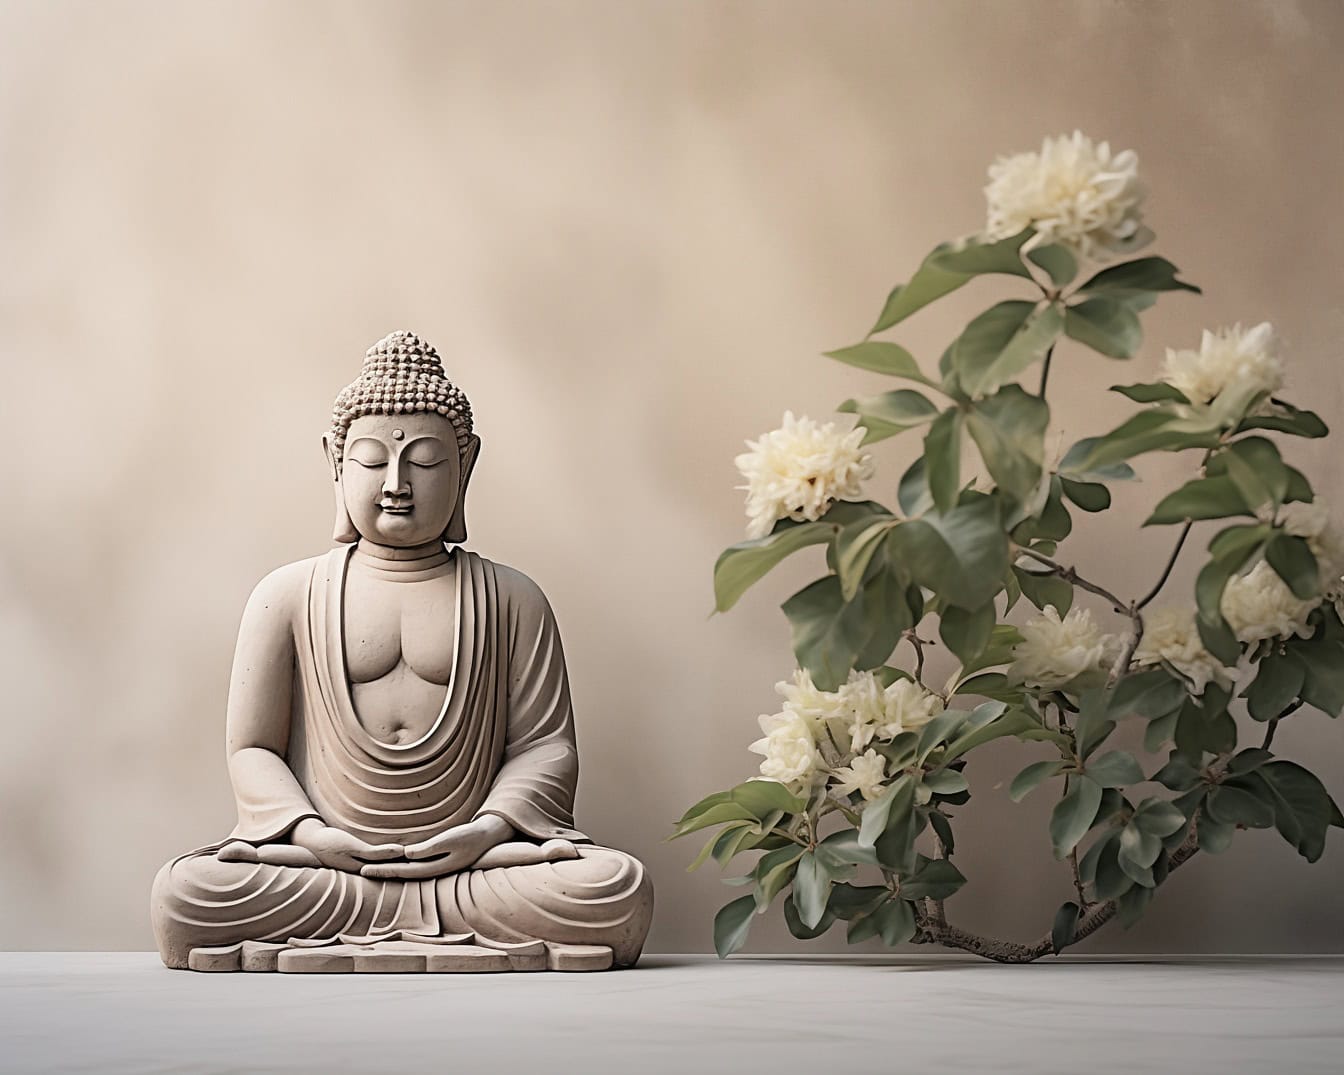 Socha Buddhy v transcendentální zenové meditaci znázorňující meditaci jako duchovní filozofii